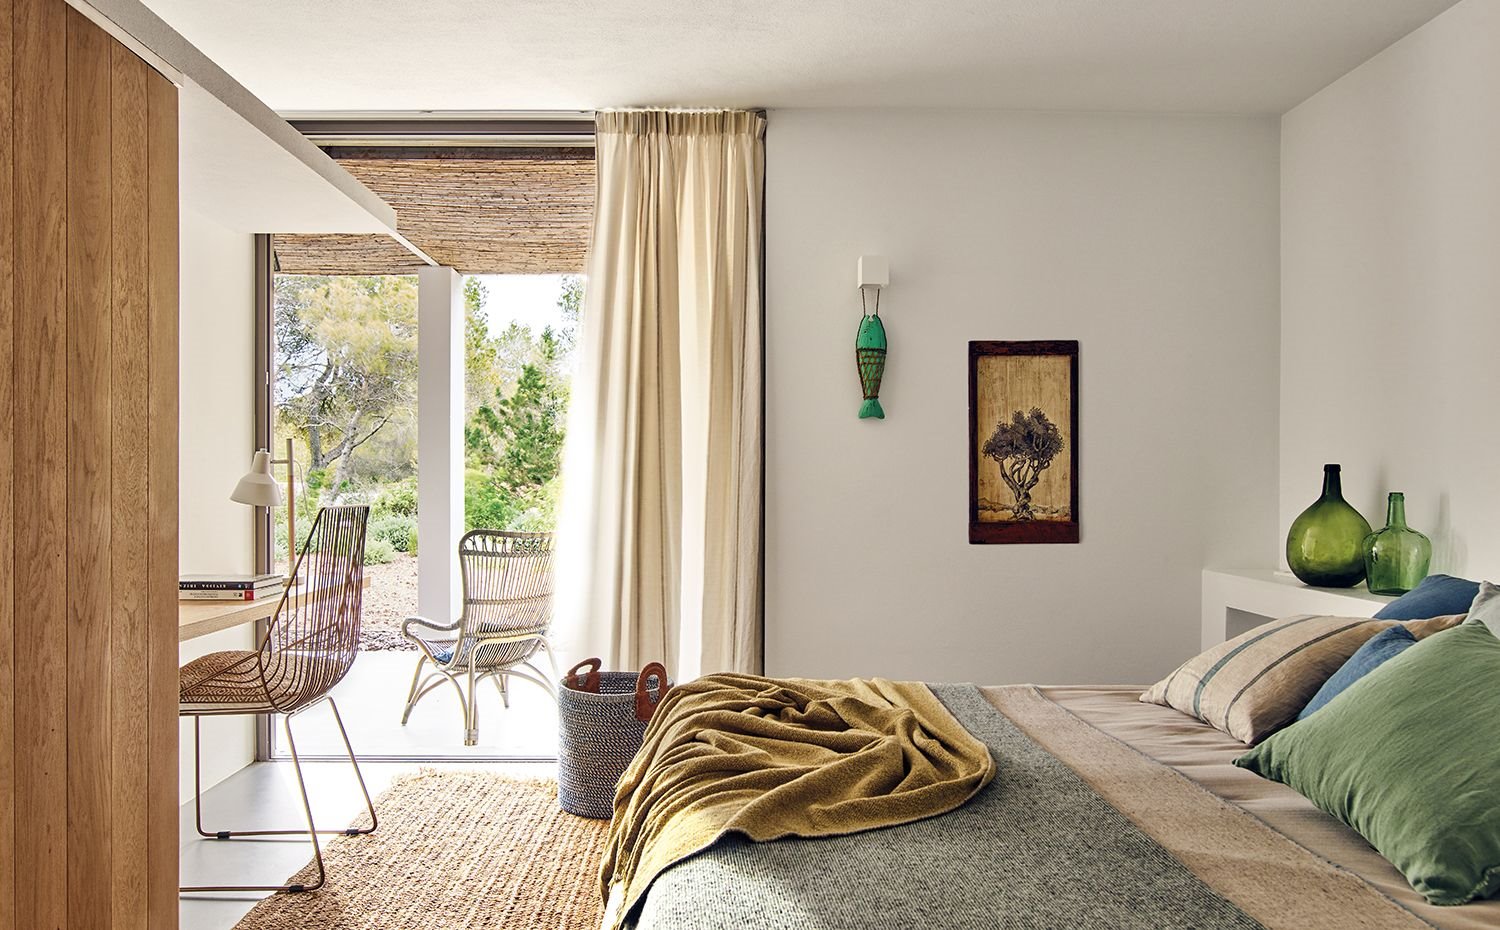 Dormitorio con detalles de estilo rustico y telas de materiales naturales